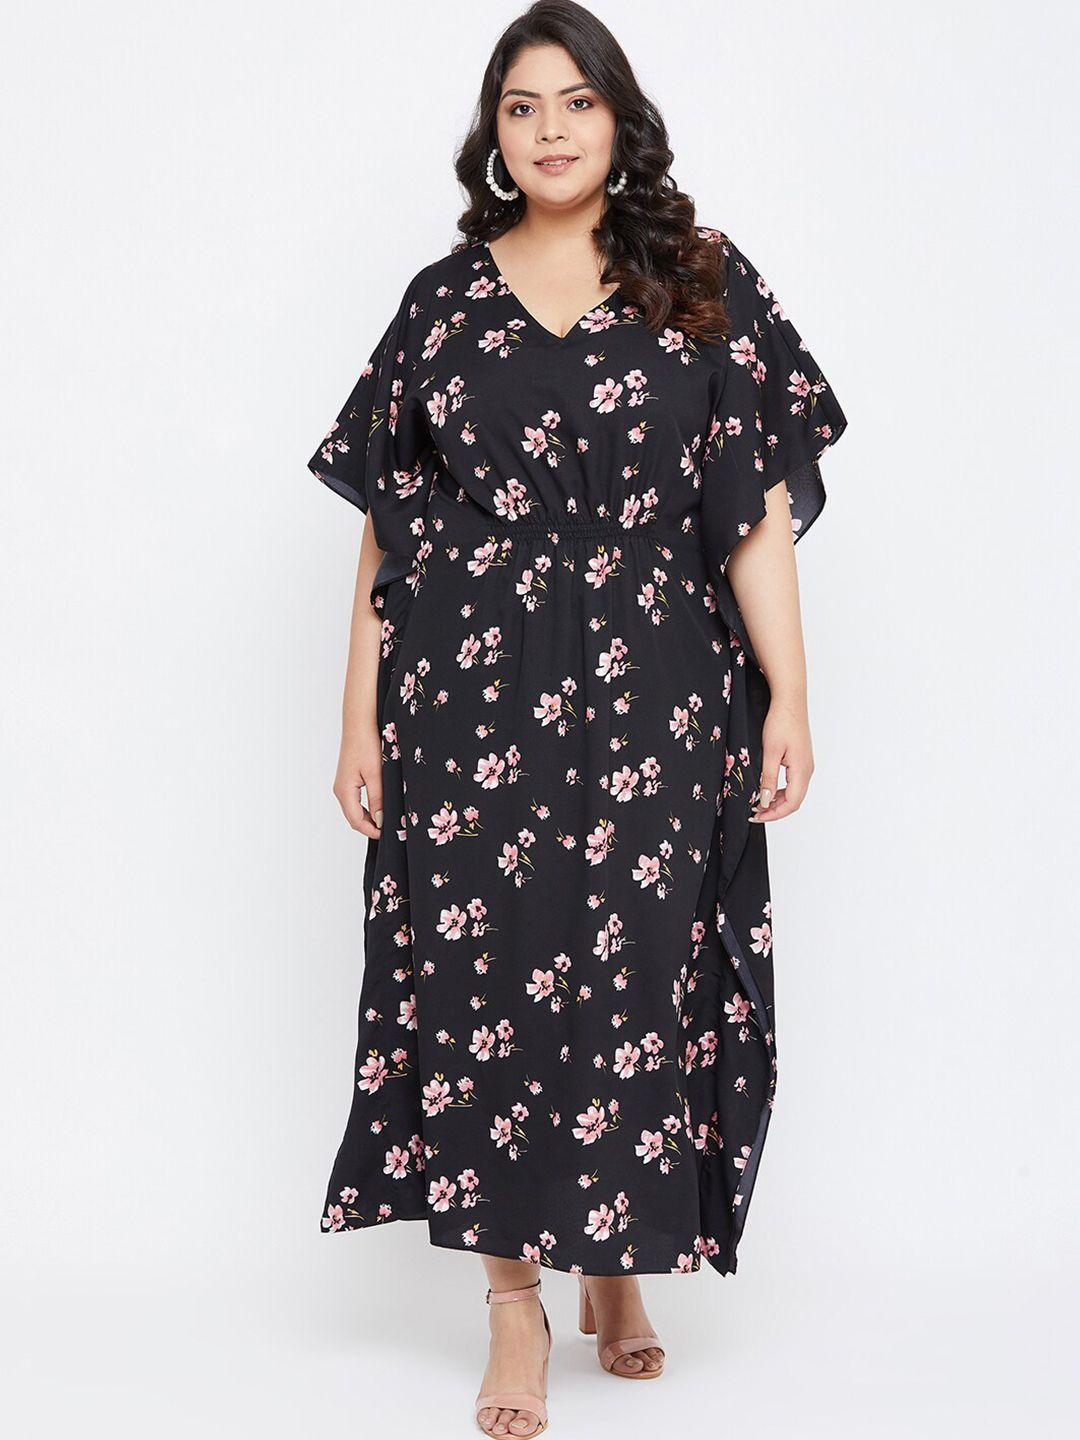 uptownie-liteplus-size--black-floral-printed-crepe-kaftan-nightdress